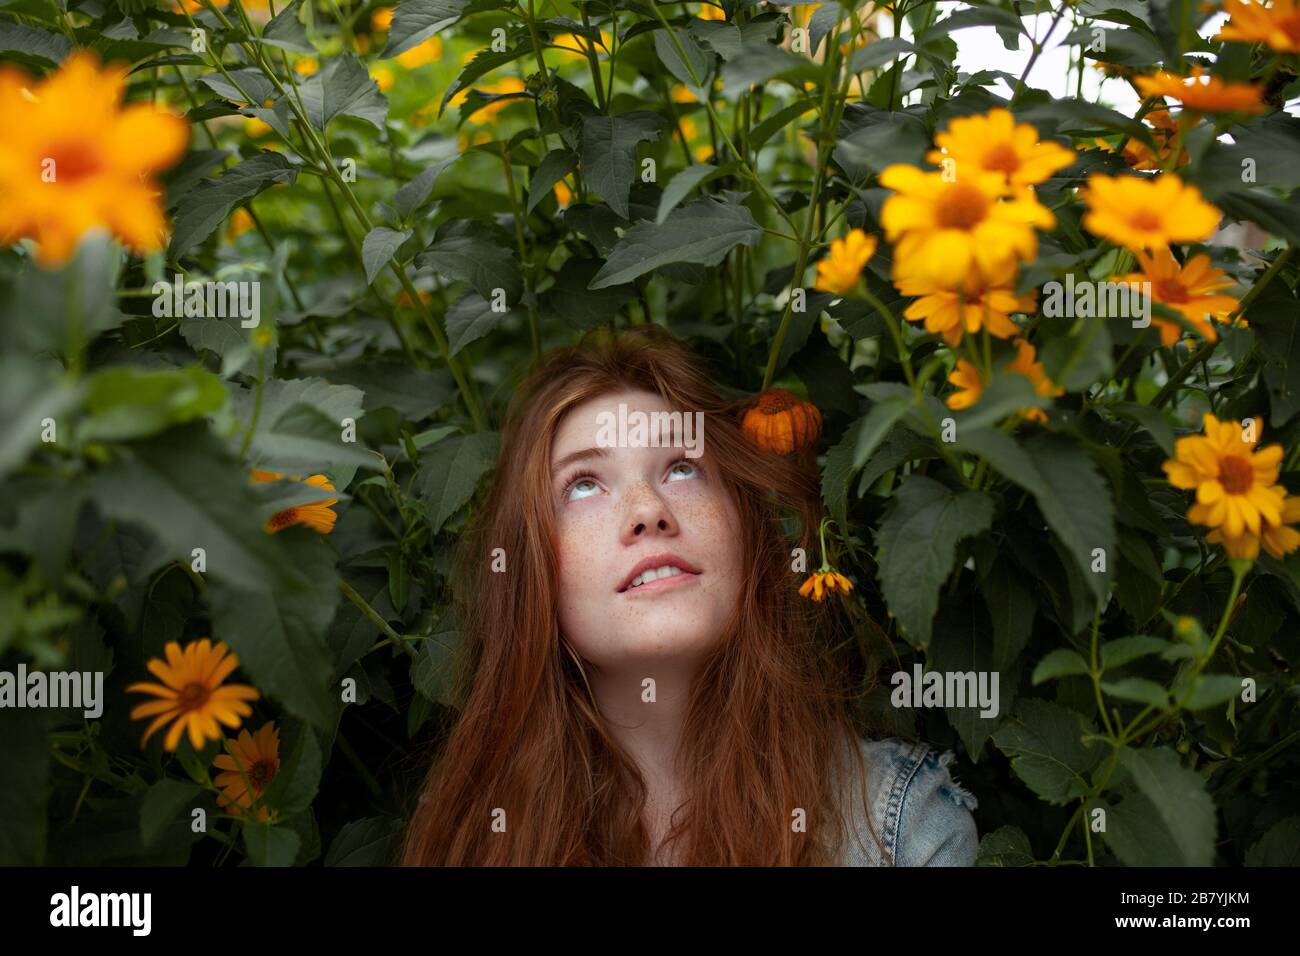 Adolescente por arbusto con flores de color naranja Foto de stock